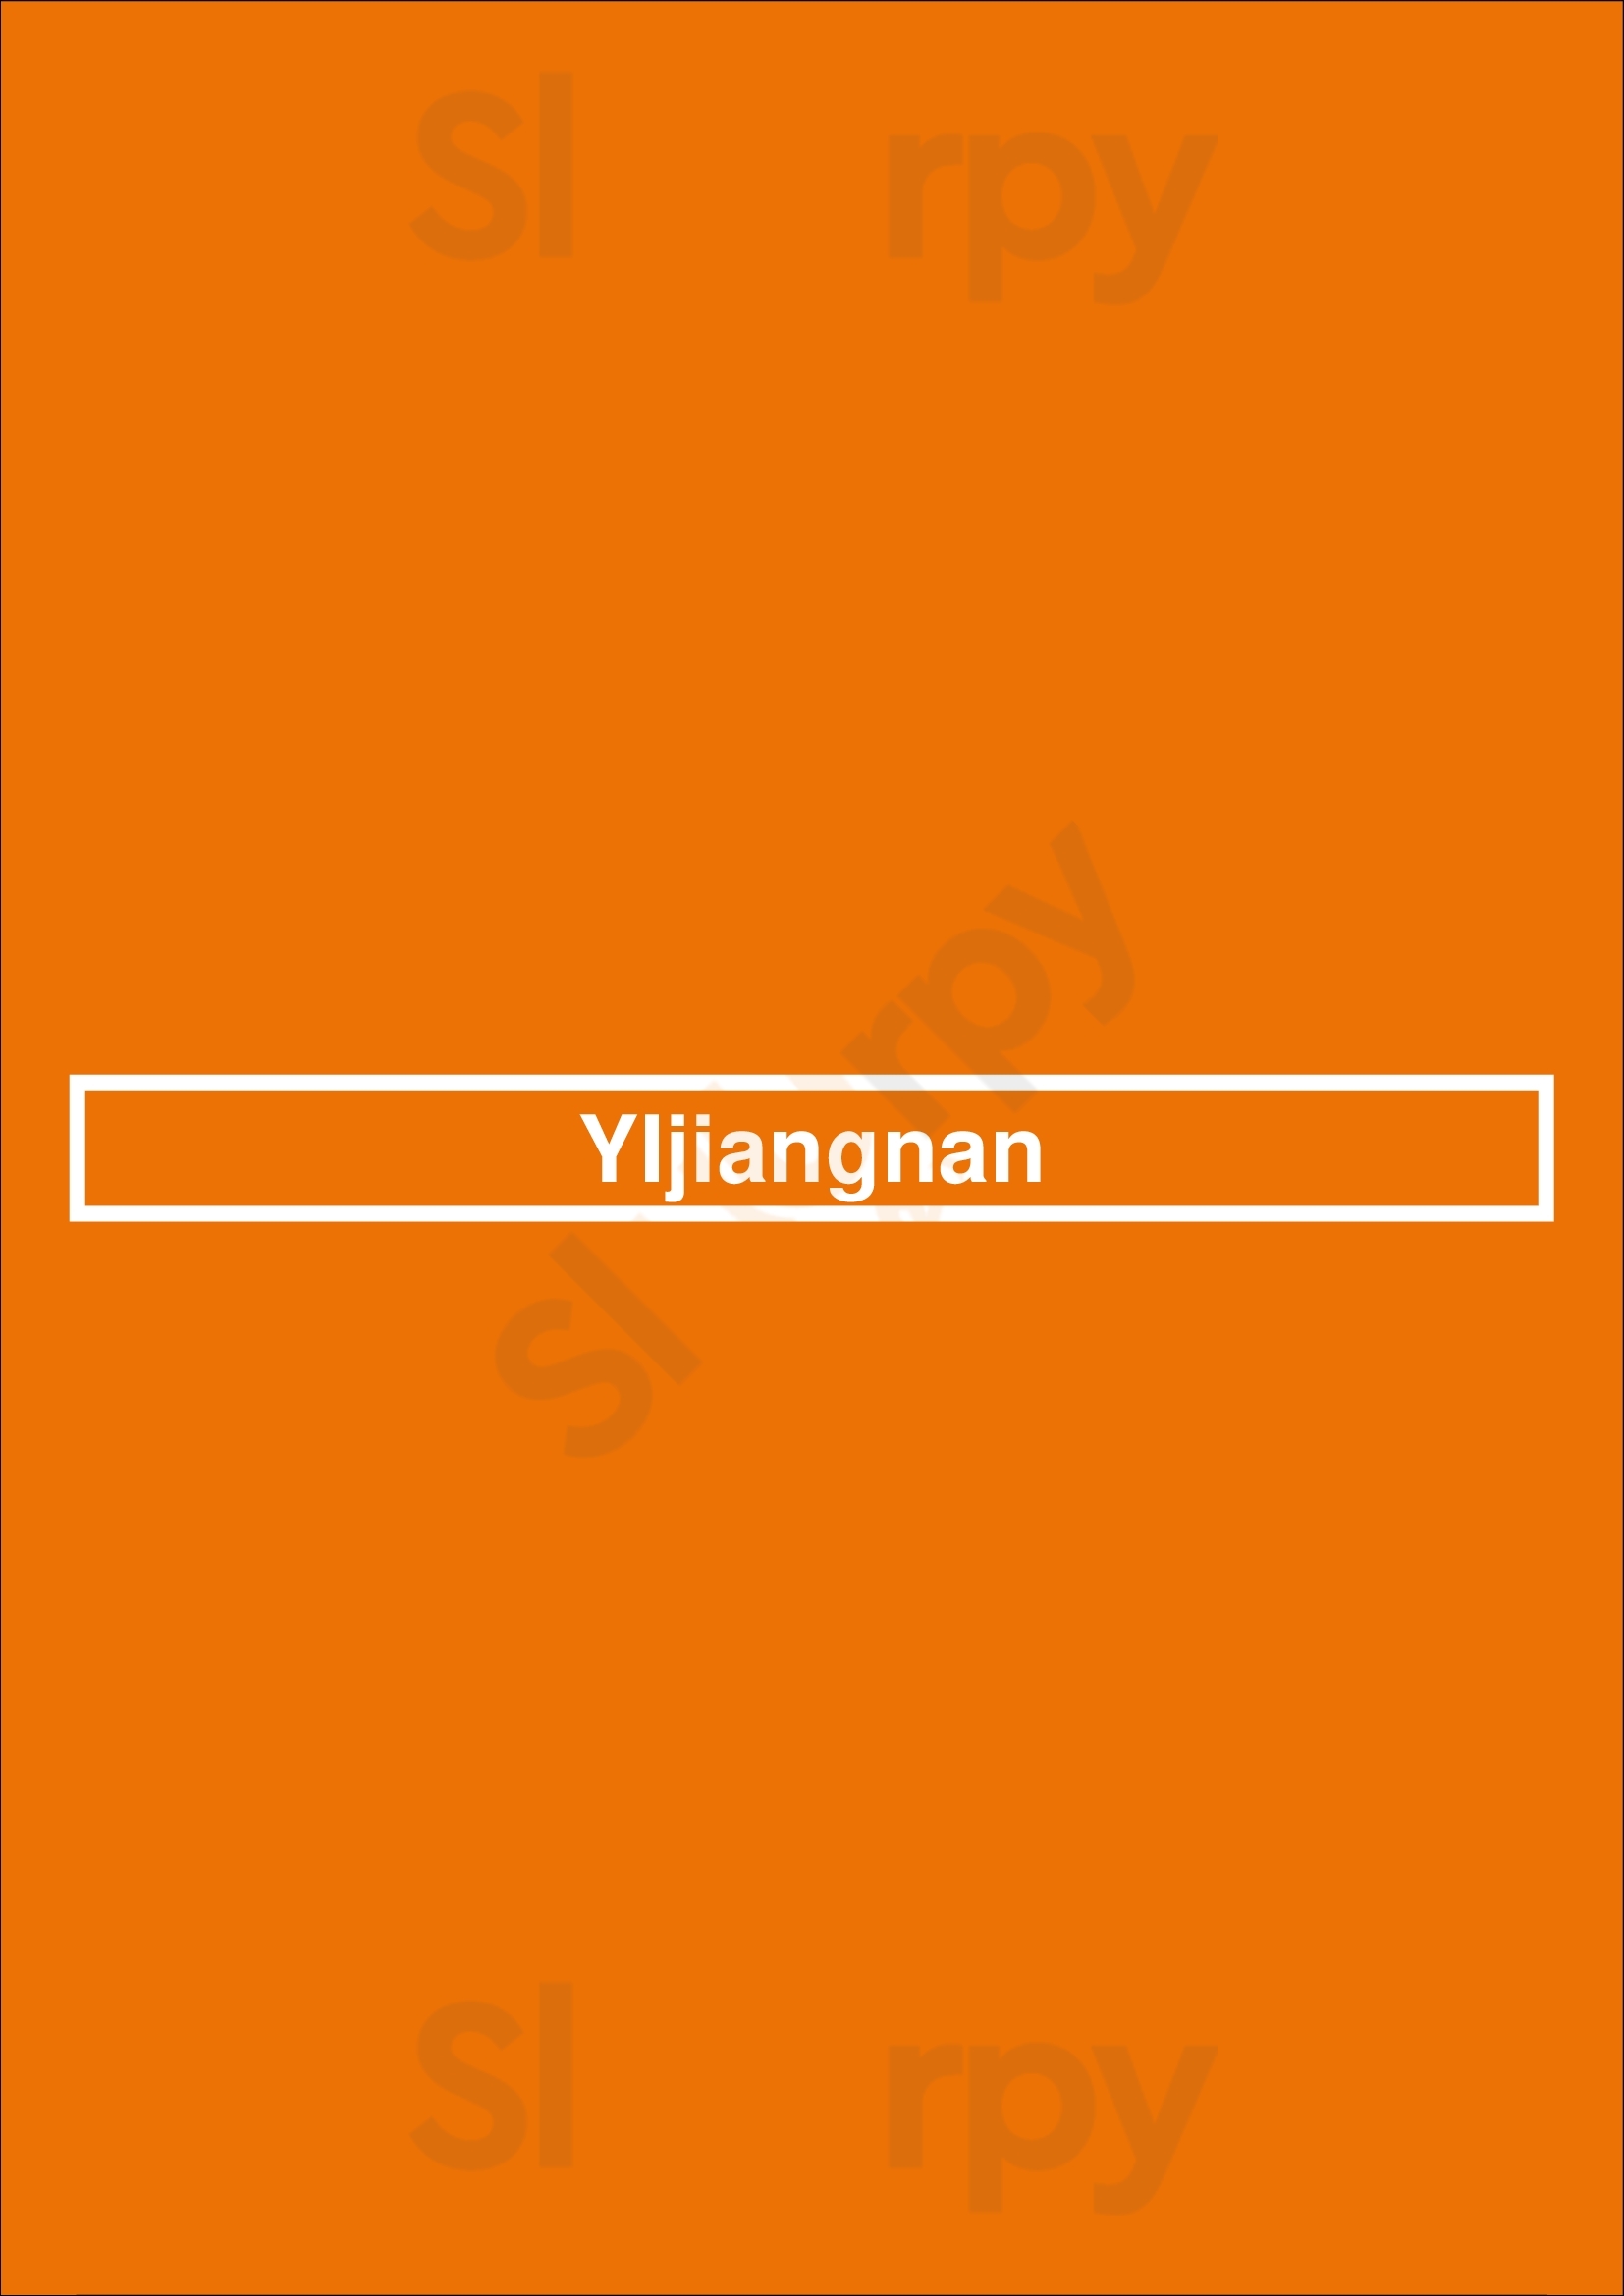 Yijiangnan Rhode-Saint-Genese Menu - 1